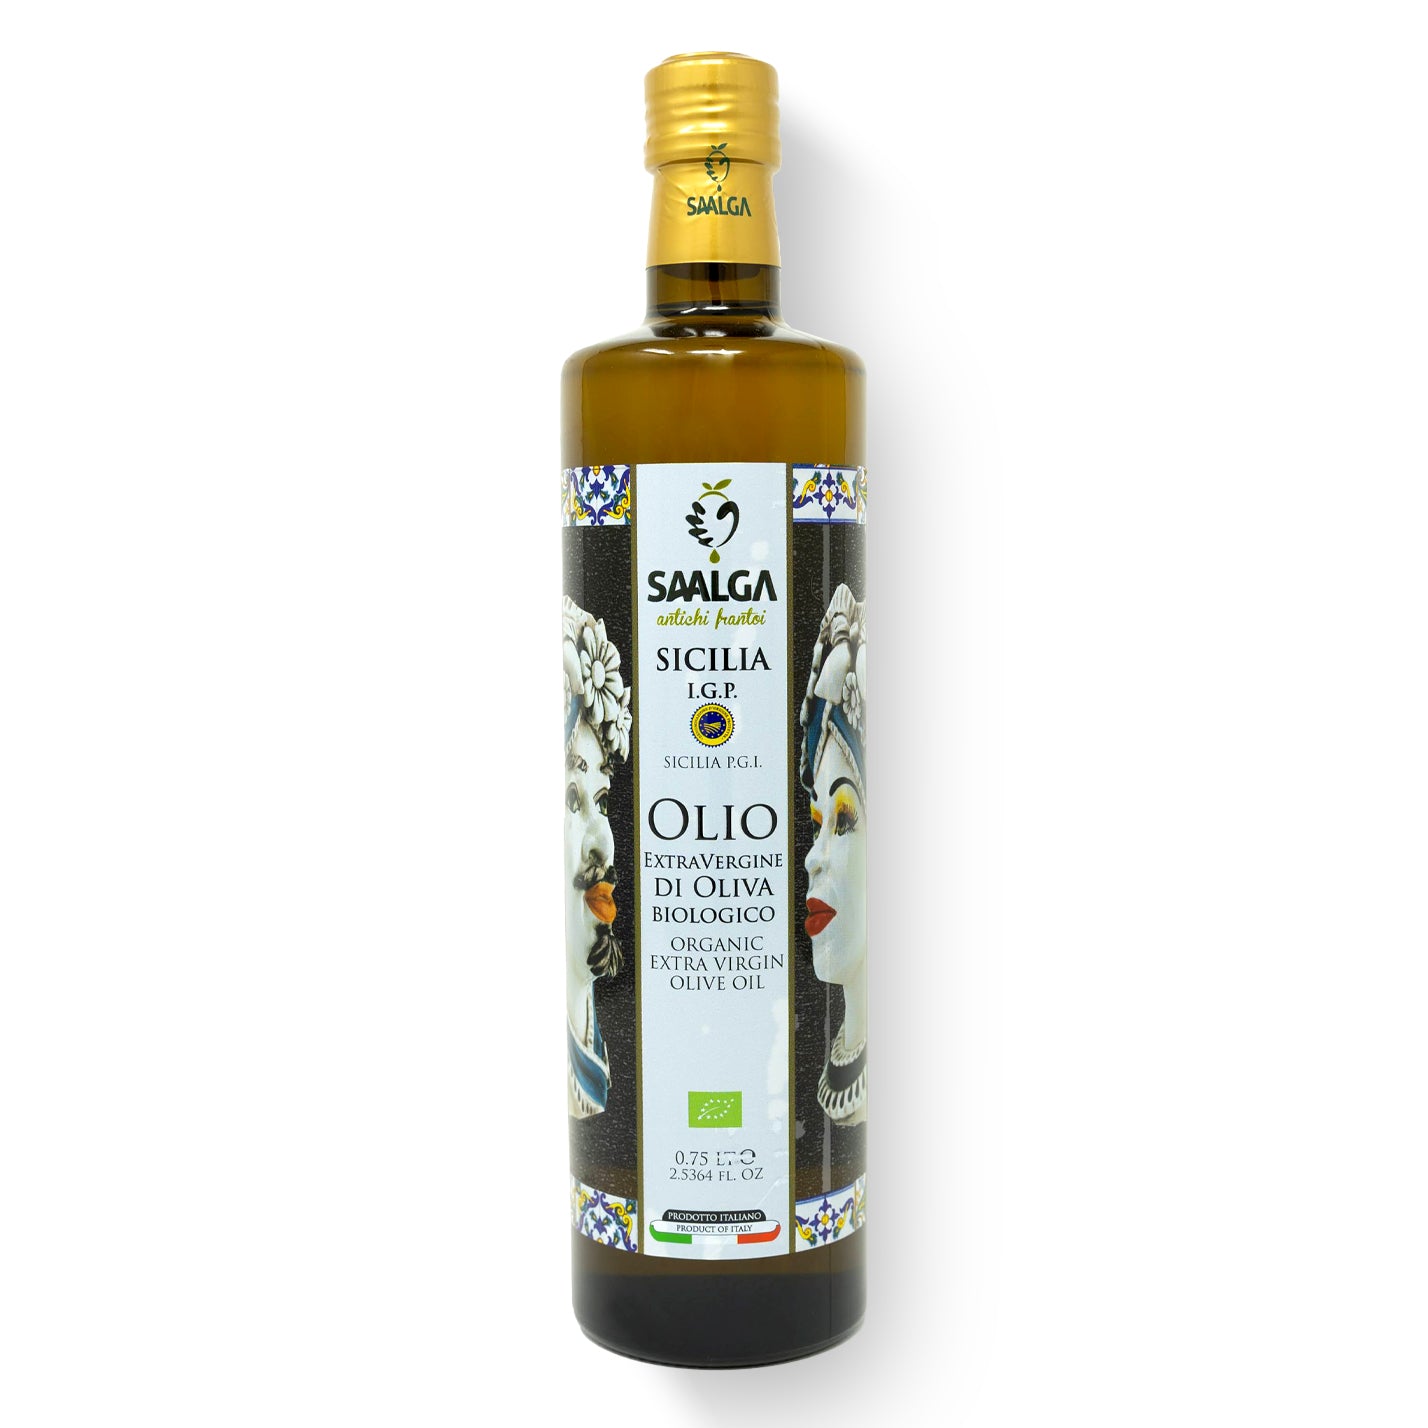 Saalga Extra Virgin Olive oil